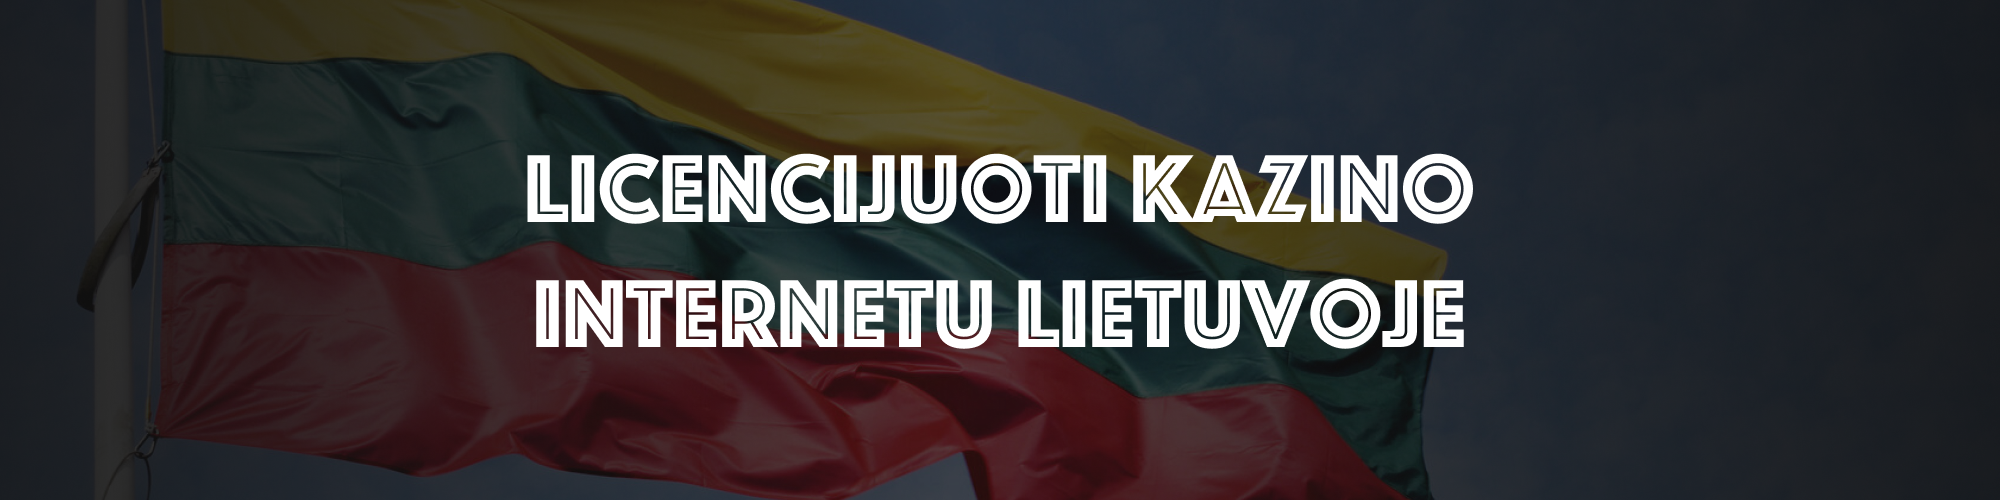 Licencijuoti kazino internetu Lietuvoje